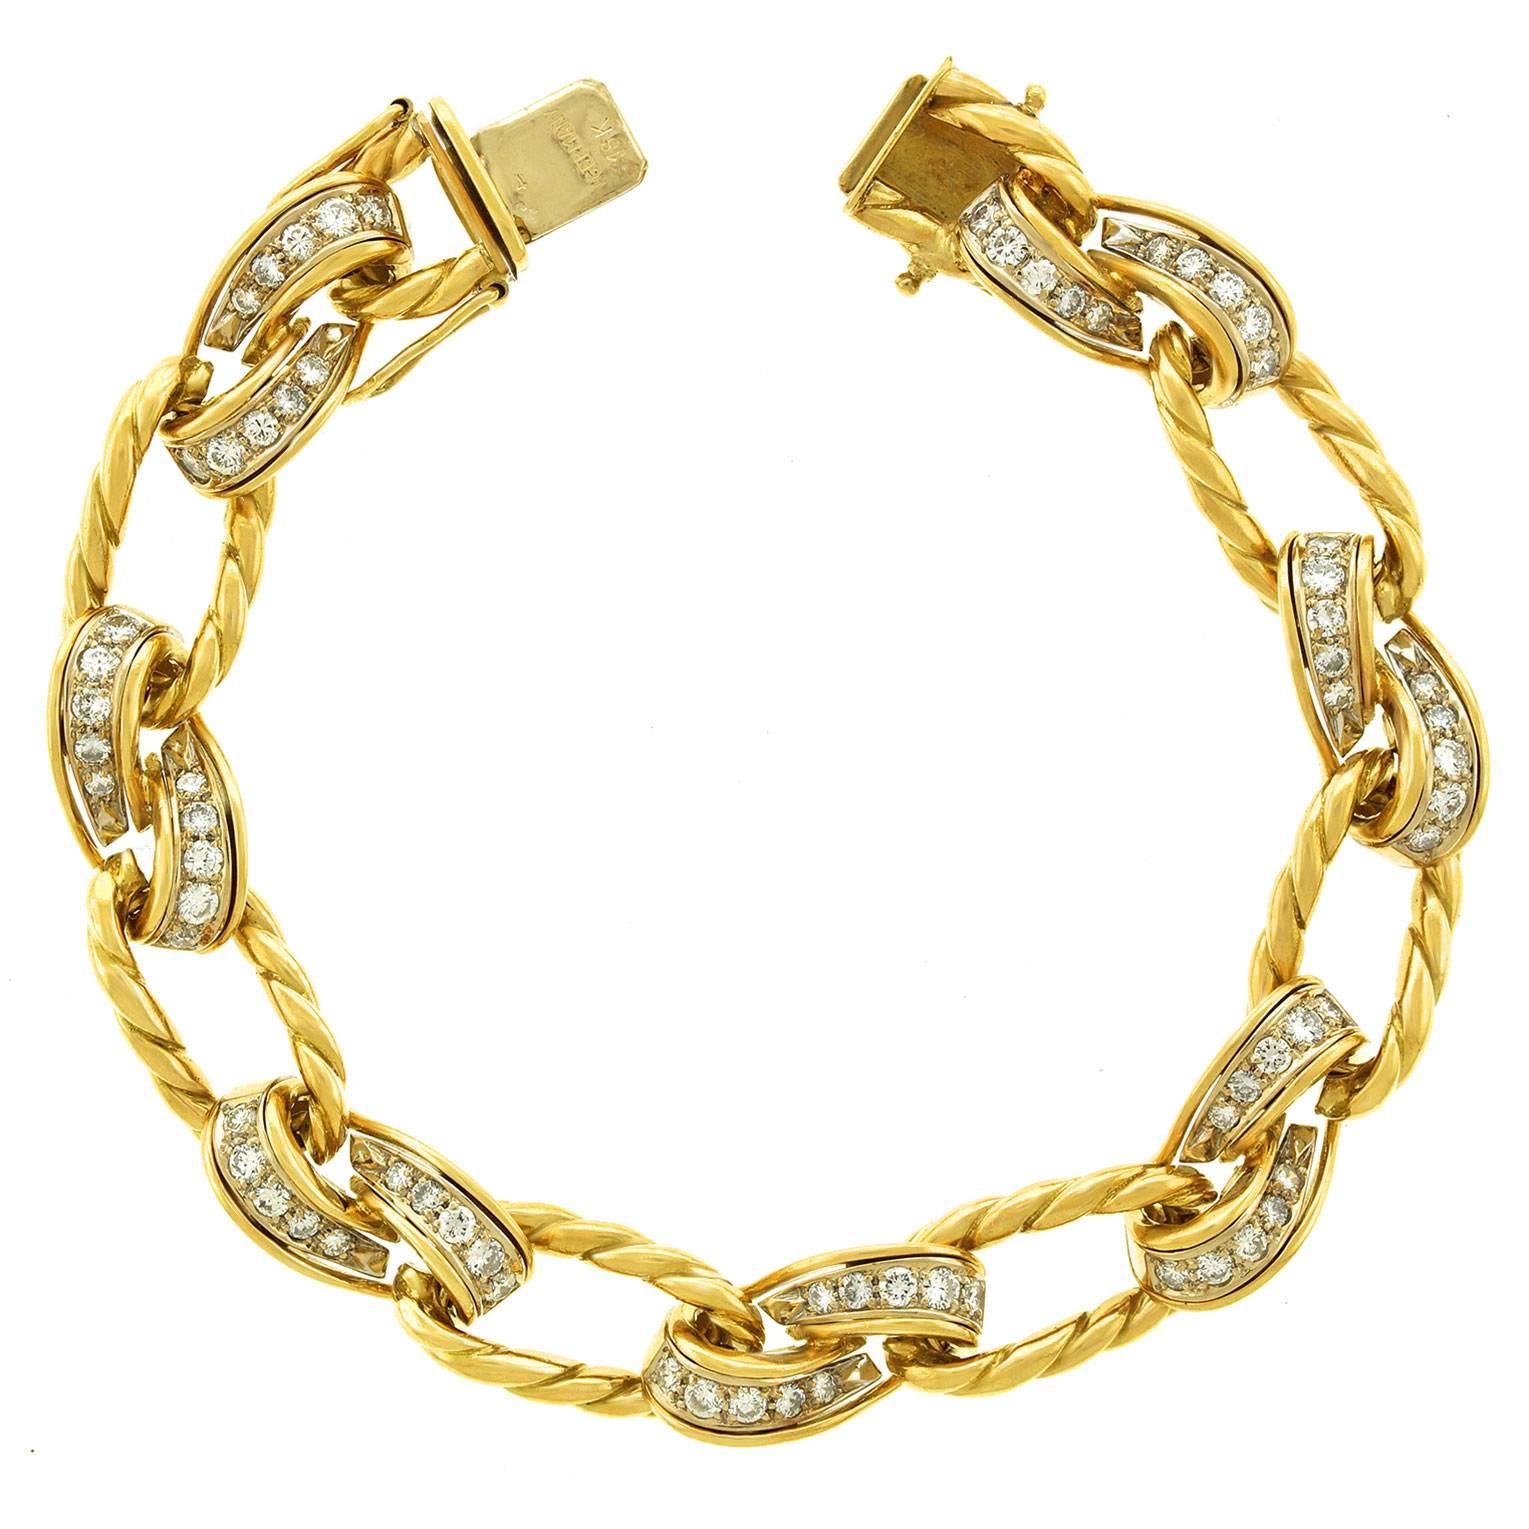 1960s Chic Diamond Gold Link Bracelet